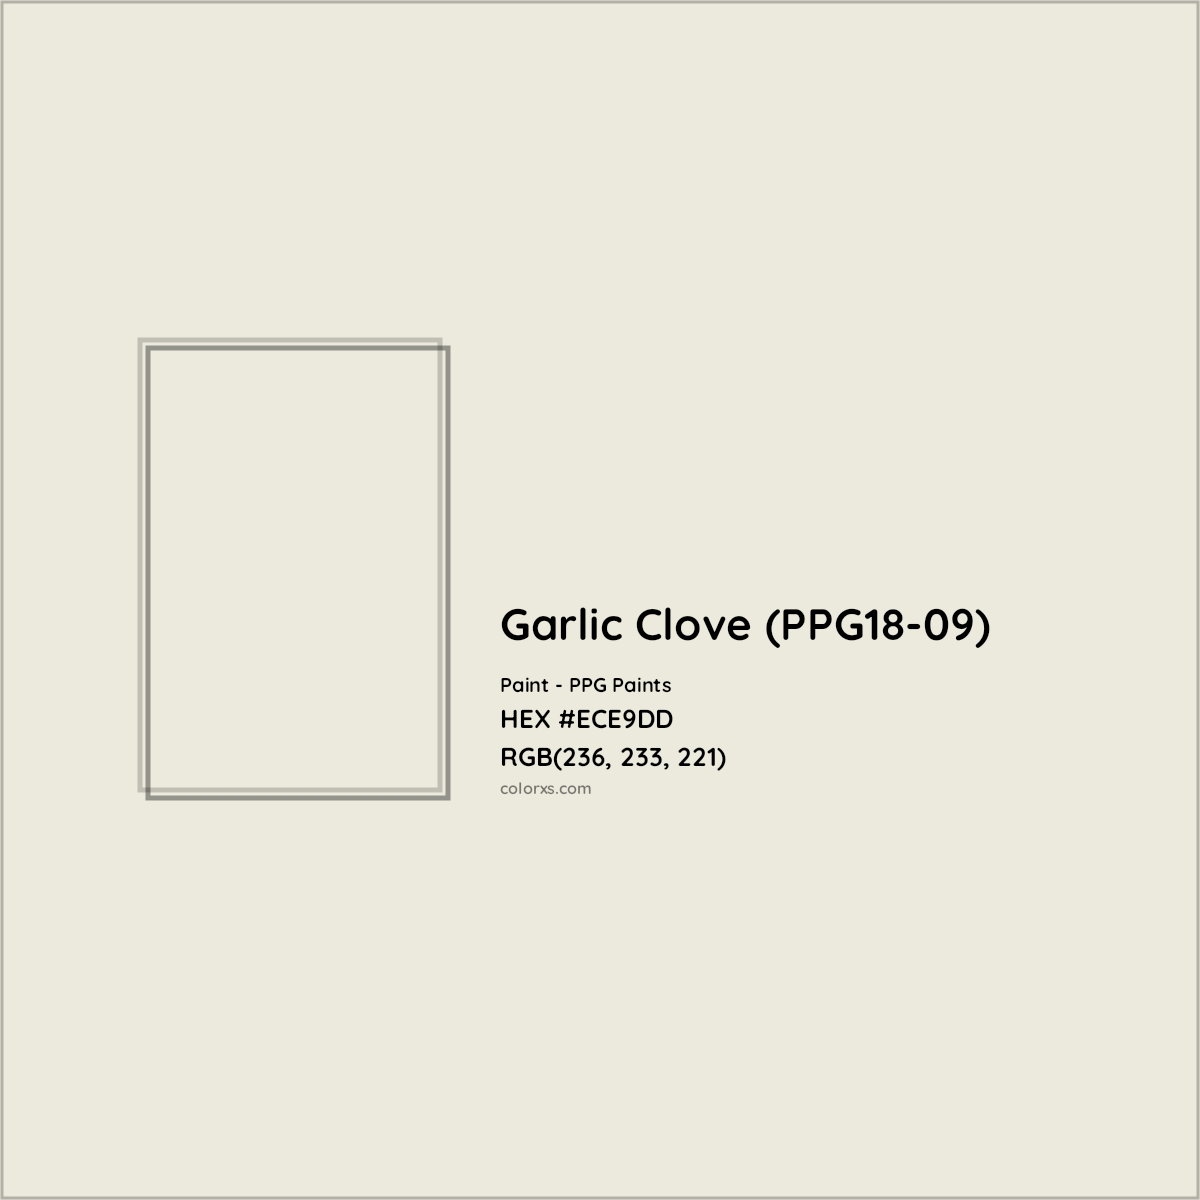 HEX #ECE9DD Garlic Clove (PPG18-09) Paint PPG Paints - Color Code